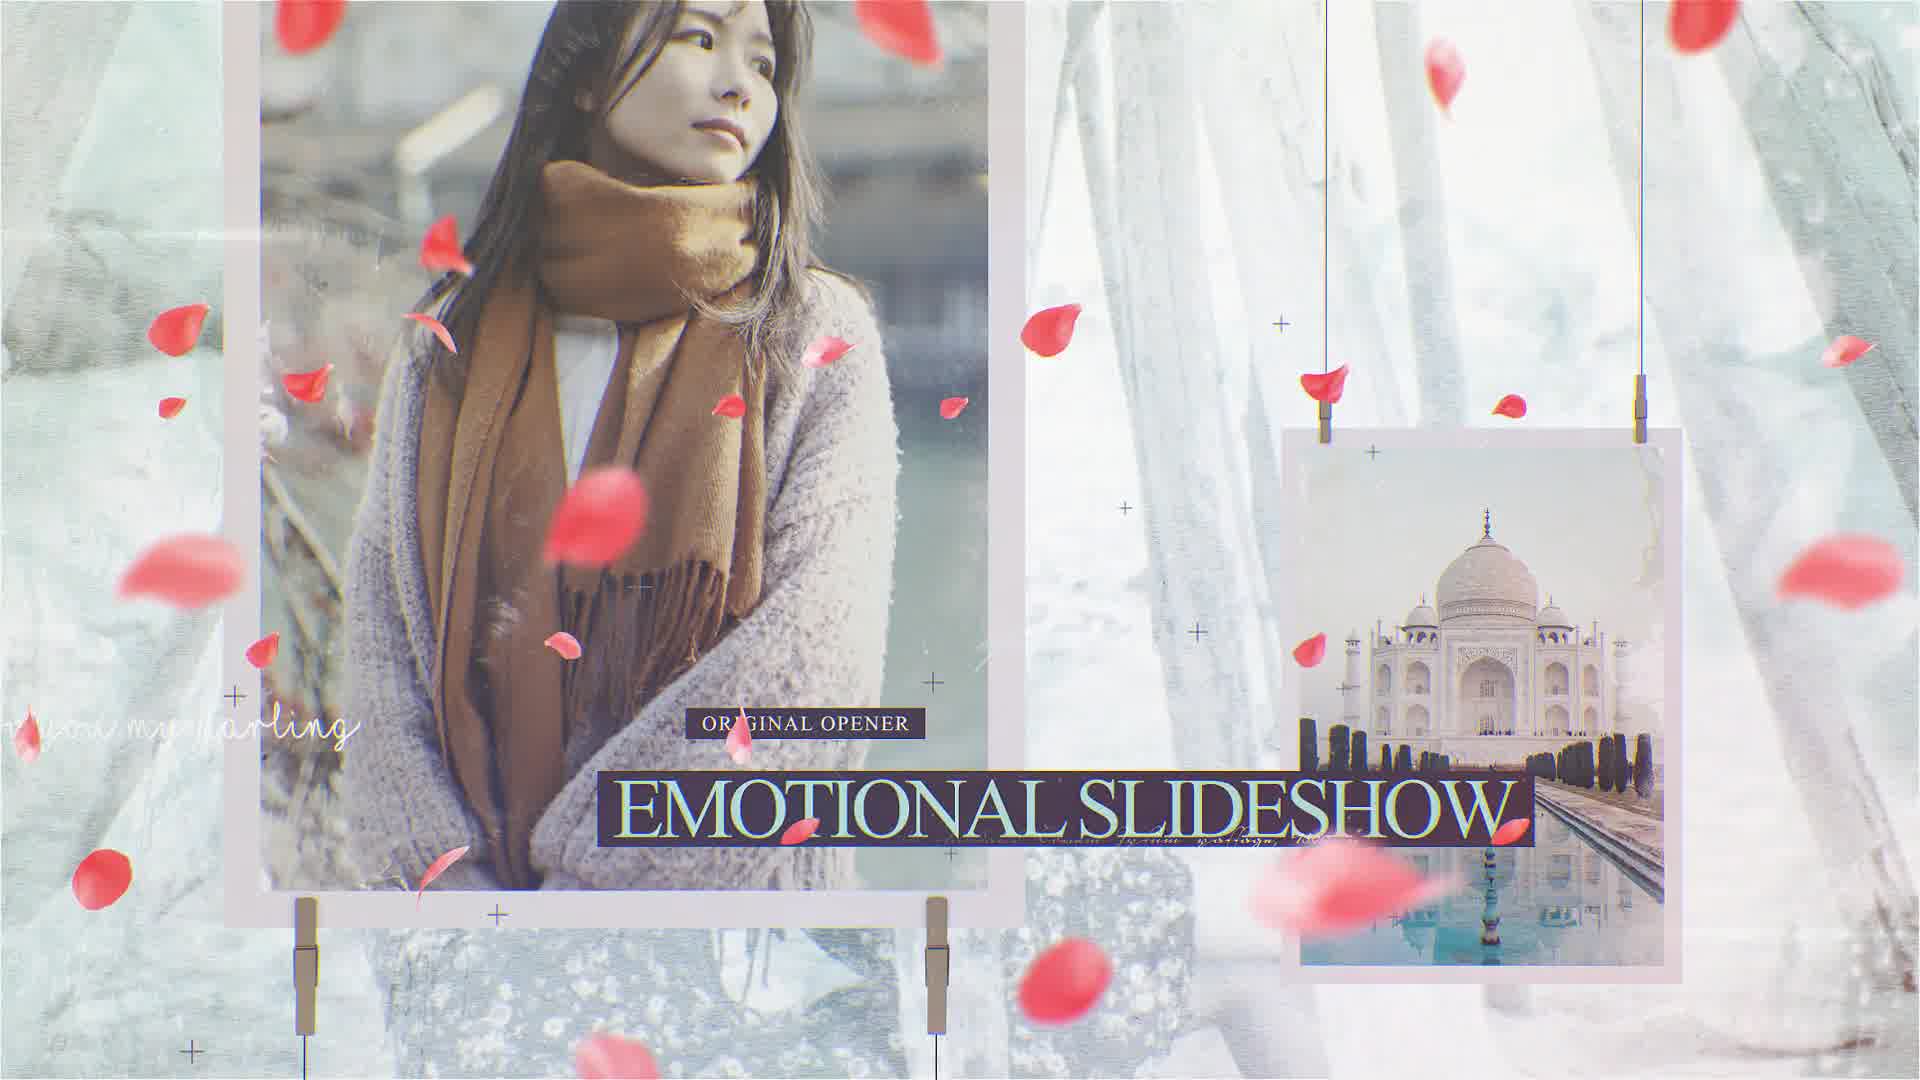 Petals Emotional Slideshow Videohive 33297576 Premiere Pro Image 11